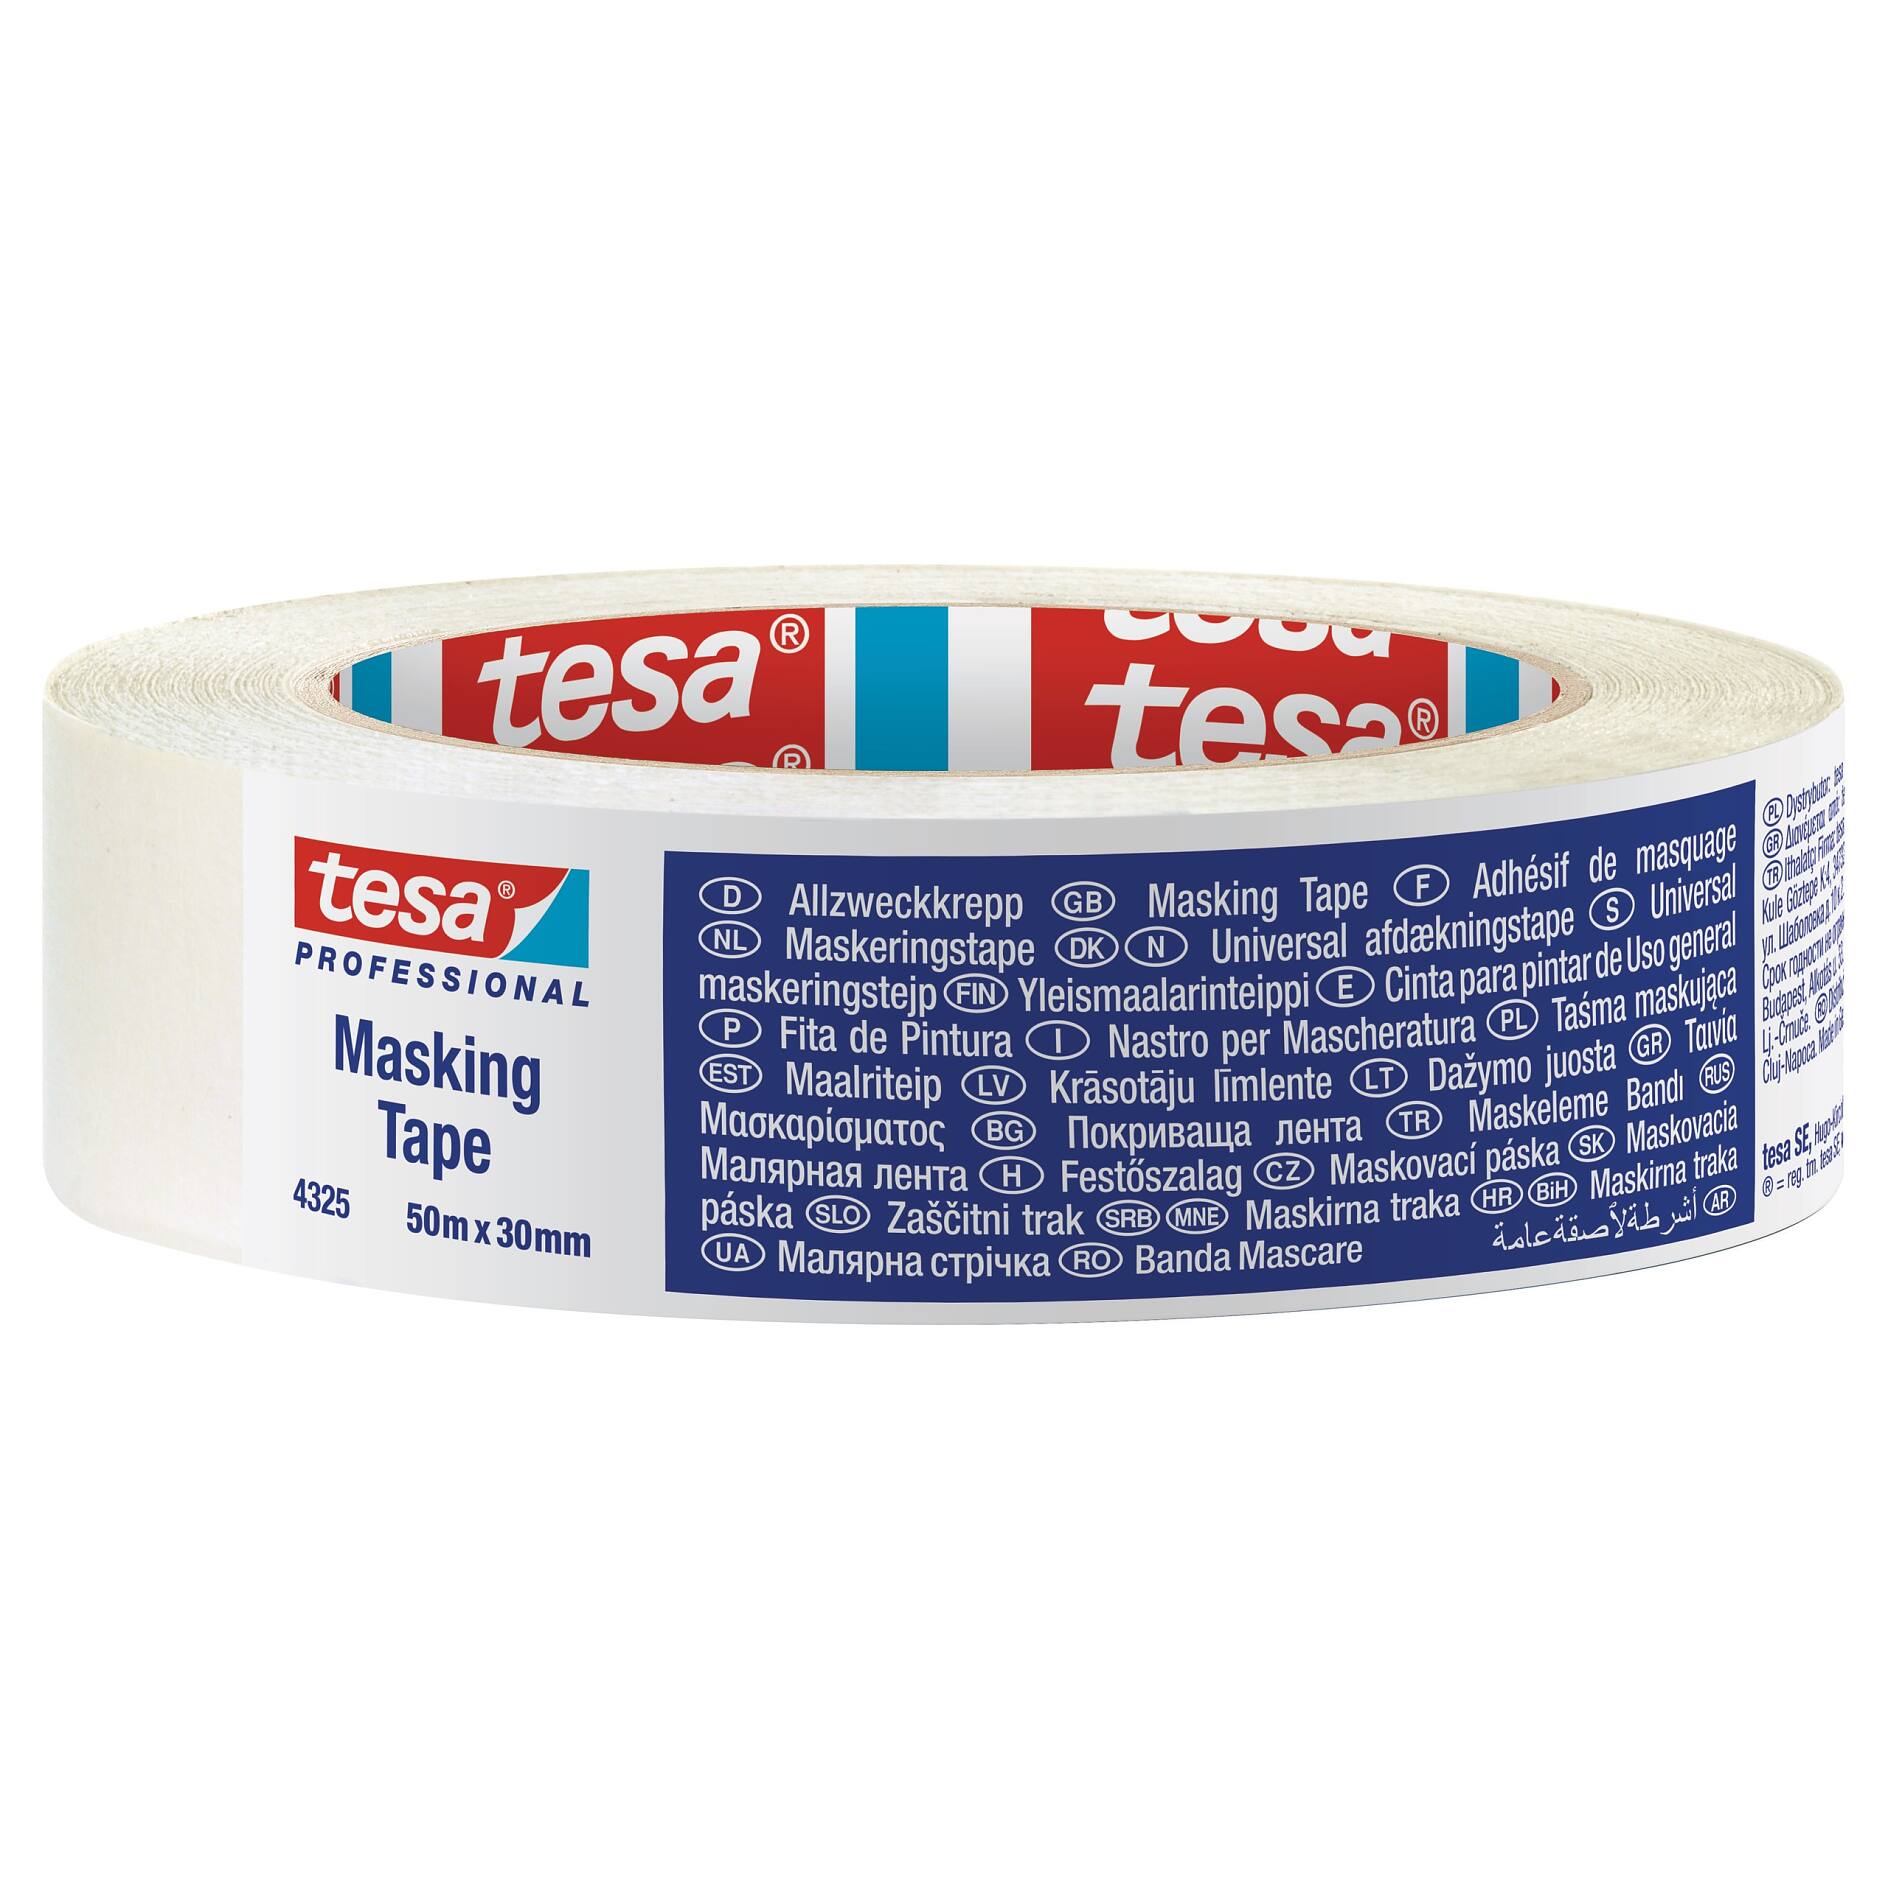 TESA® Ruban de Masquage Précision Mask Sensitive 4333 Rose – Rouleaux de  50m x 19mm